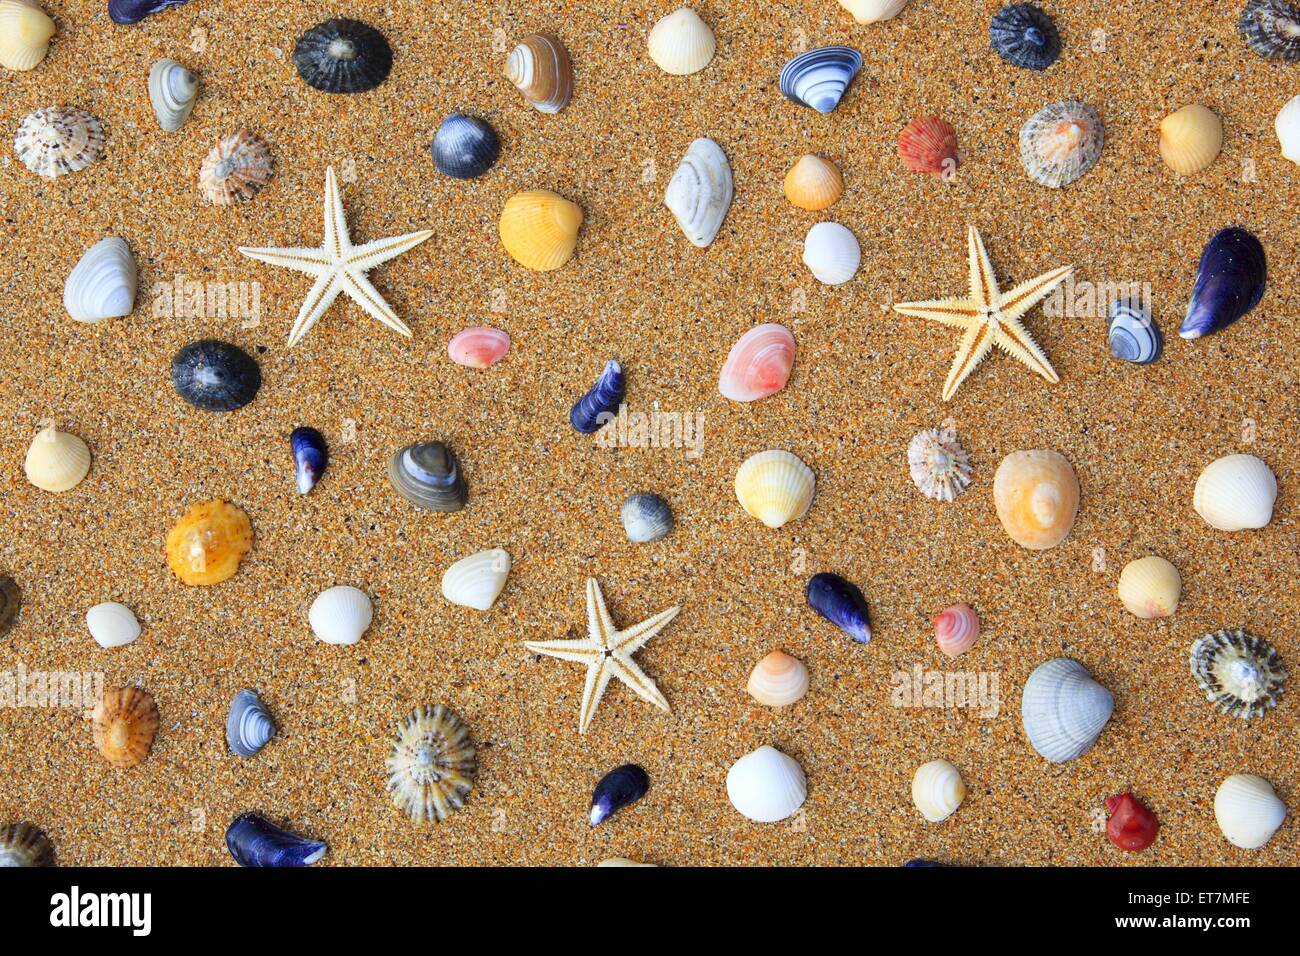 Seesterne bunte Muscheln und im Sand, Grossbritannien Schottland | seastars, colorés et dans le sable, conques, Royaume-Uni Scotl Banque D'Images